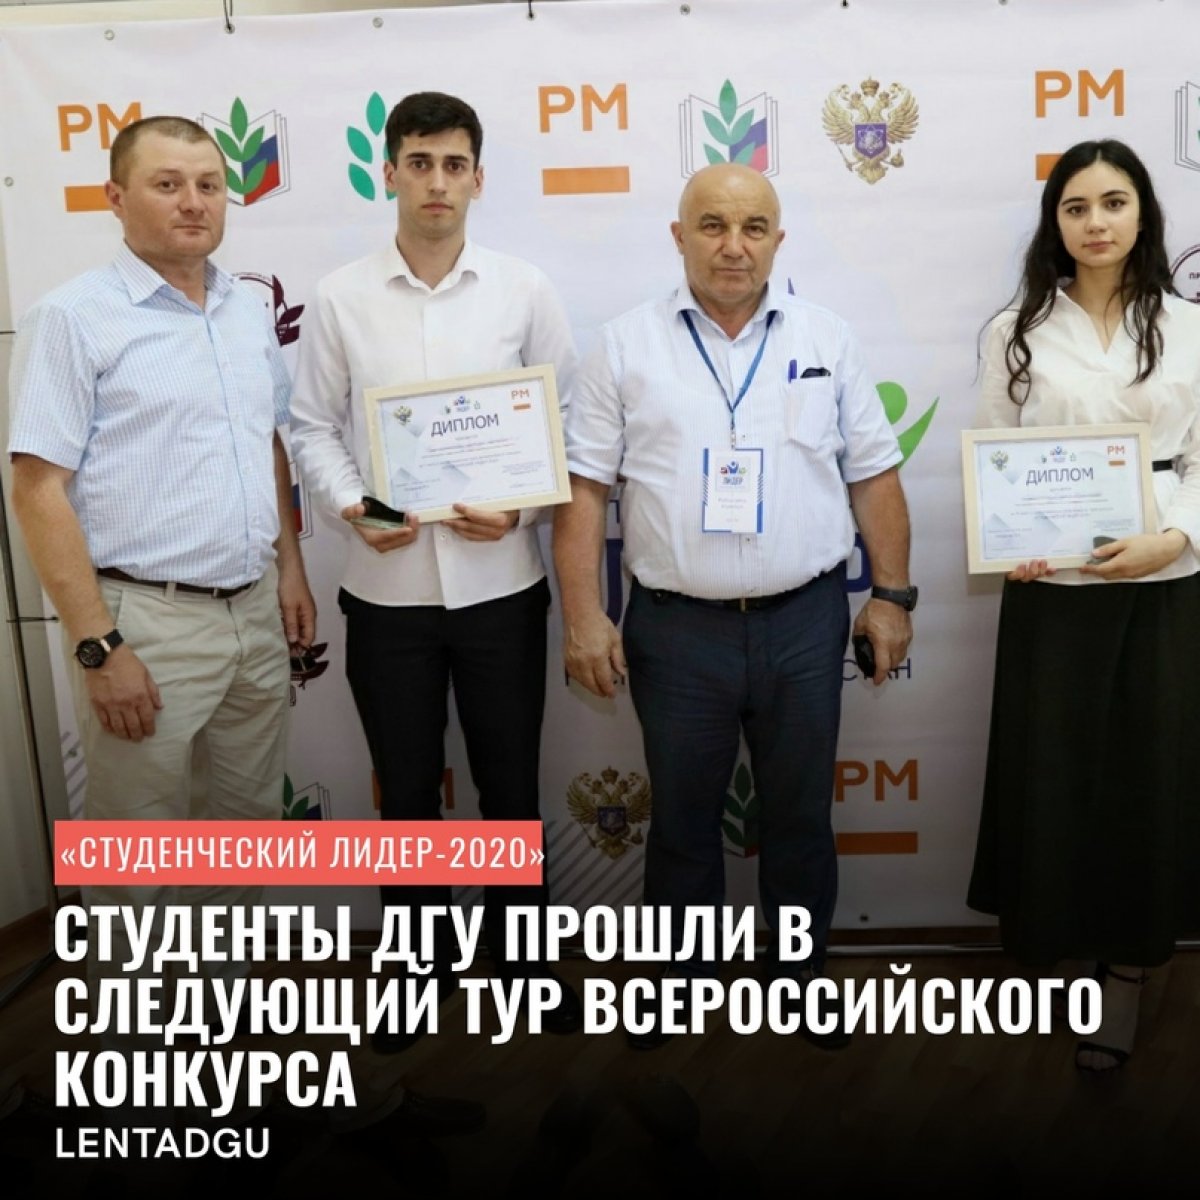 Студенты ДГУ прошли в следующий тур Всероссийского конкурса «Студенческий лидер-2020»